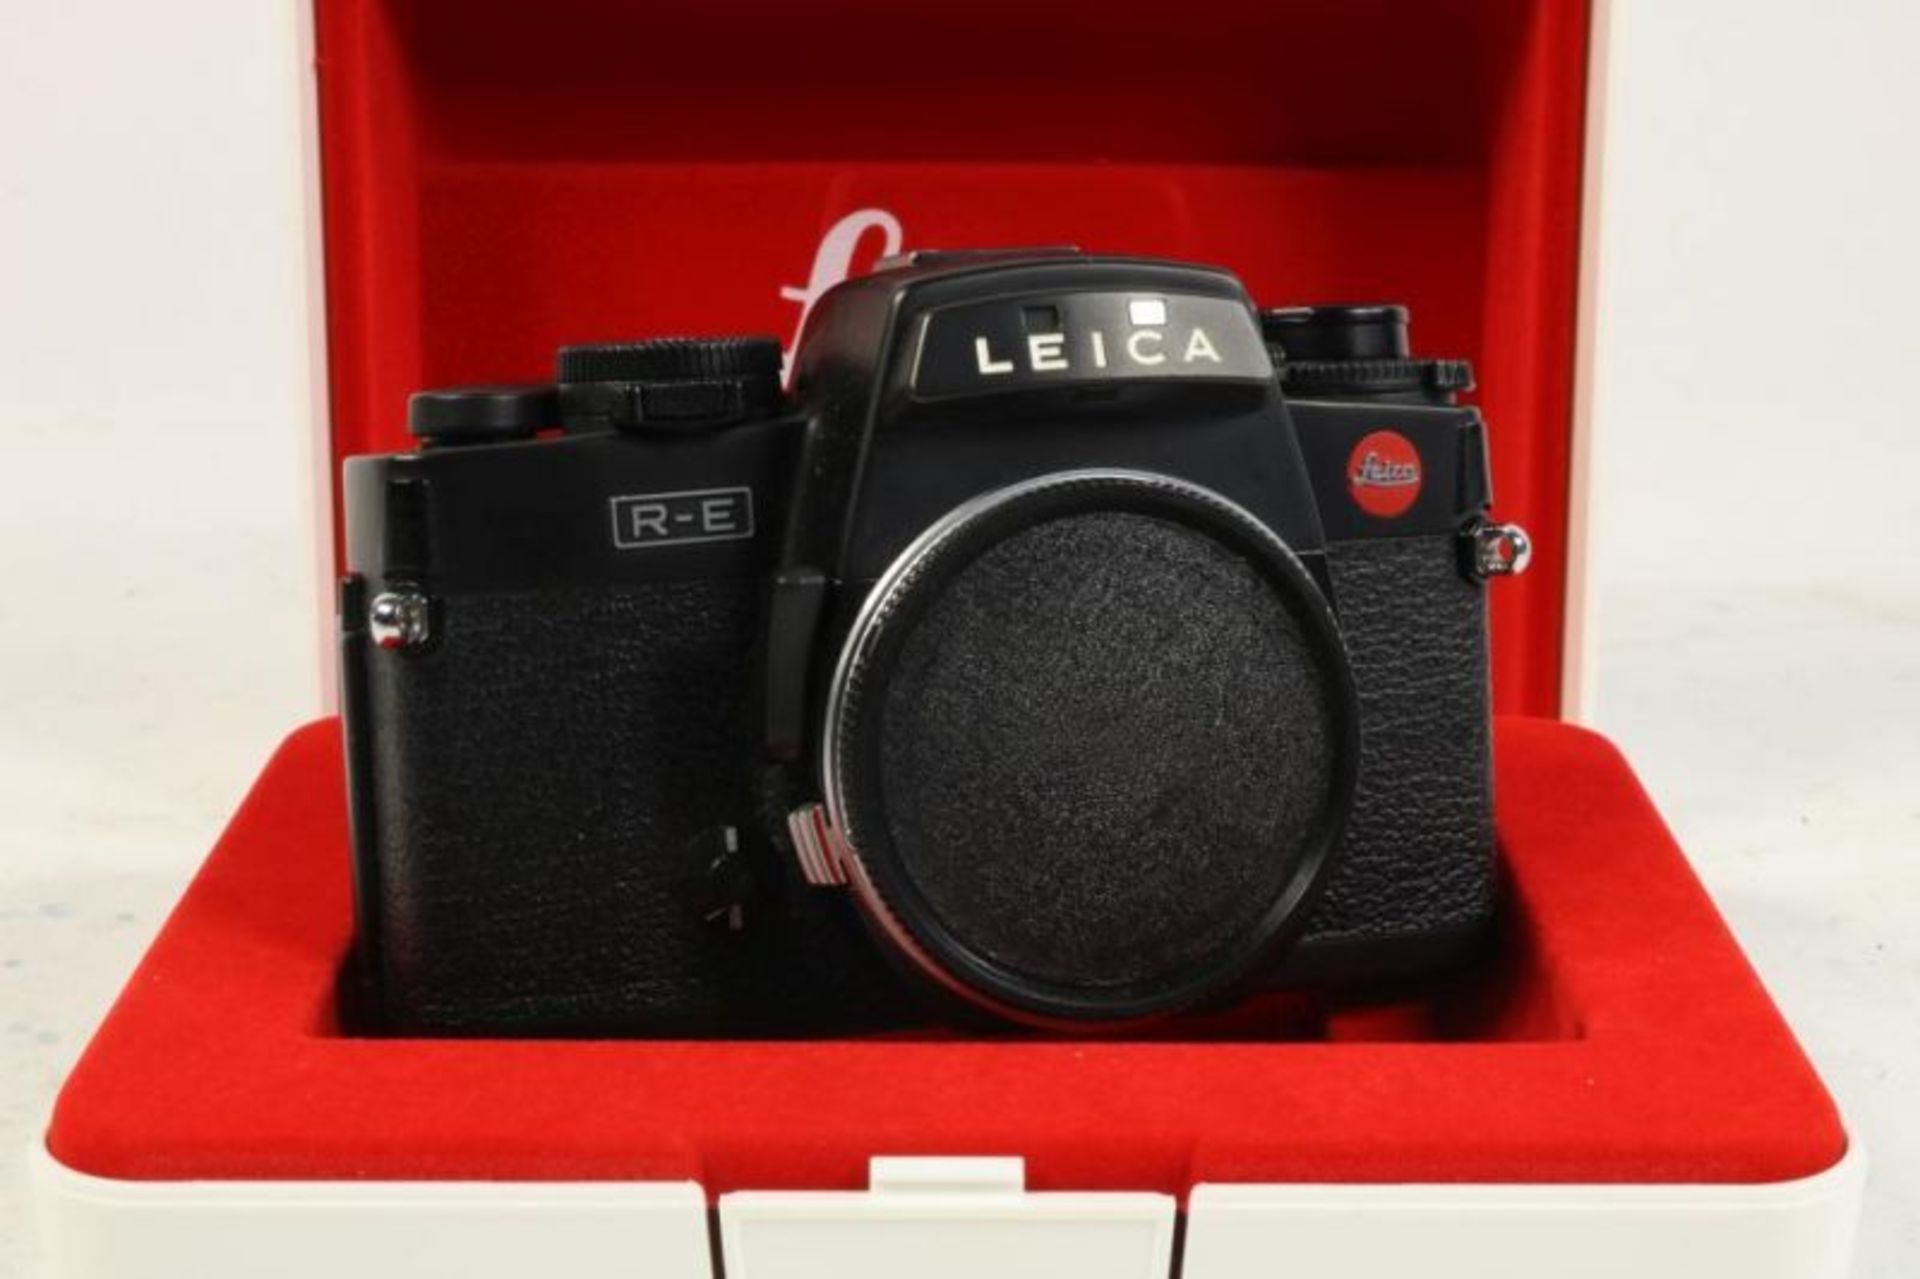 Leica RE spiegelreflexcamera met diverse lensen, macro-ring, waarbij originele doos - Bild 2 aus 5